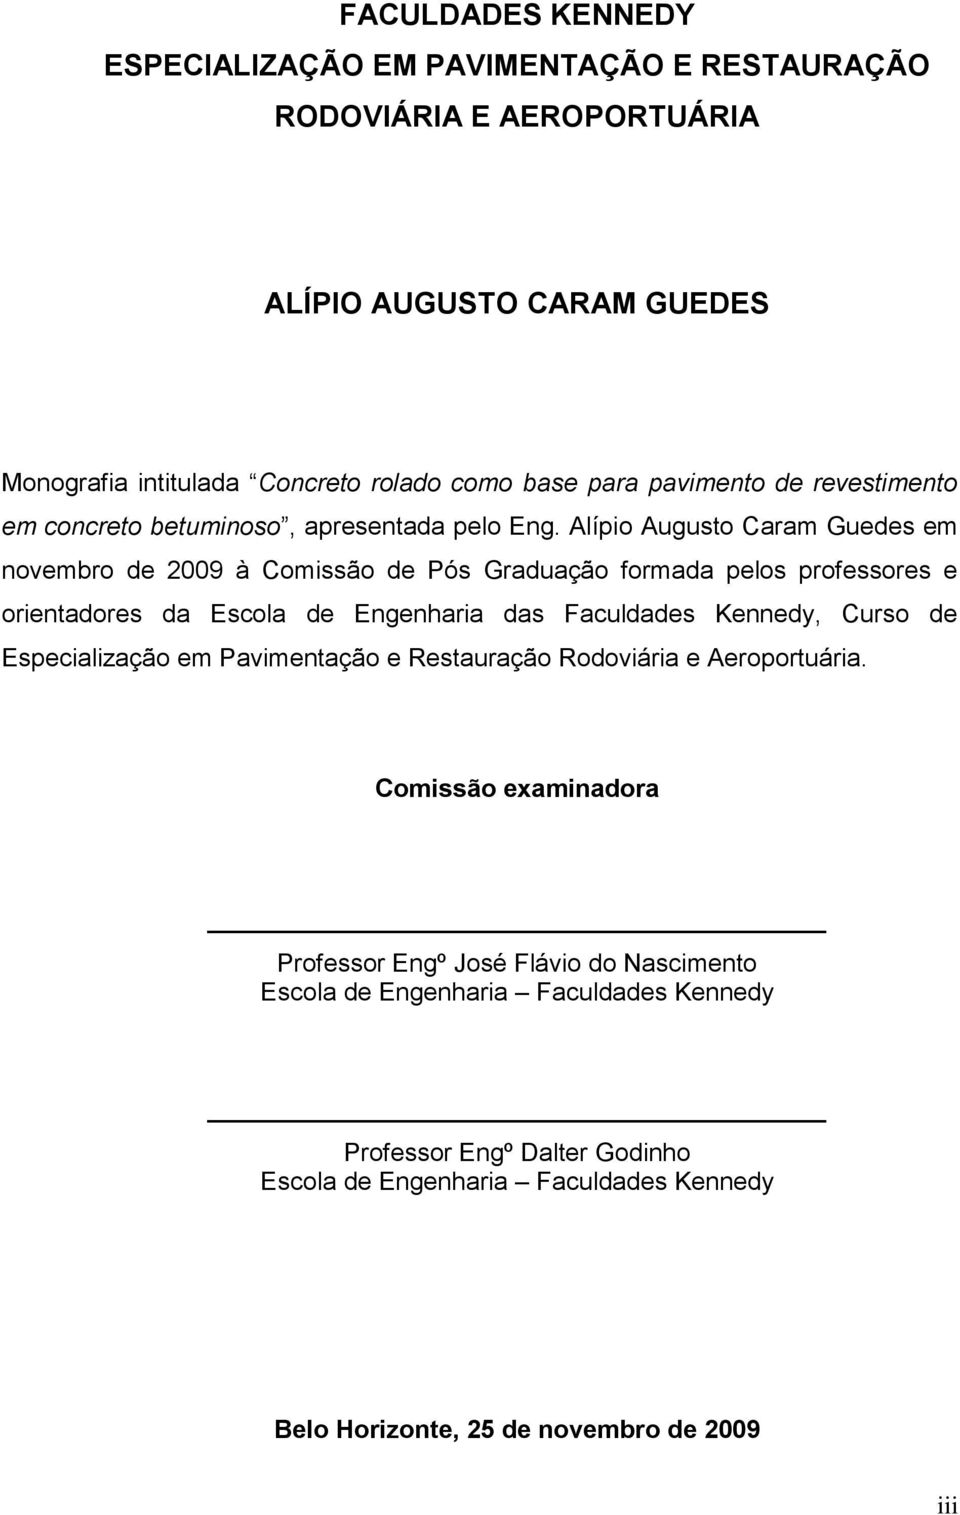 Alípio Augusto Caram Guedes em novembro de 2009 à Comissão de Pós Graduação formada pelos professores e orientadores da Escola de Engenharia das Faculdades Kennedy, Curso de